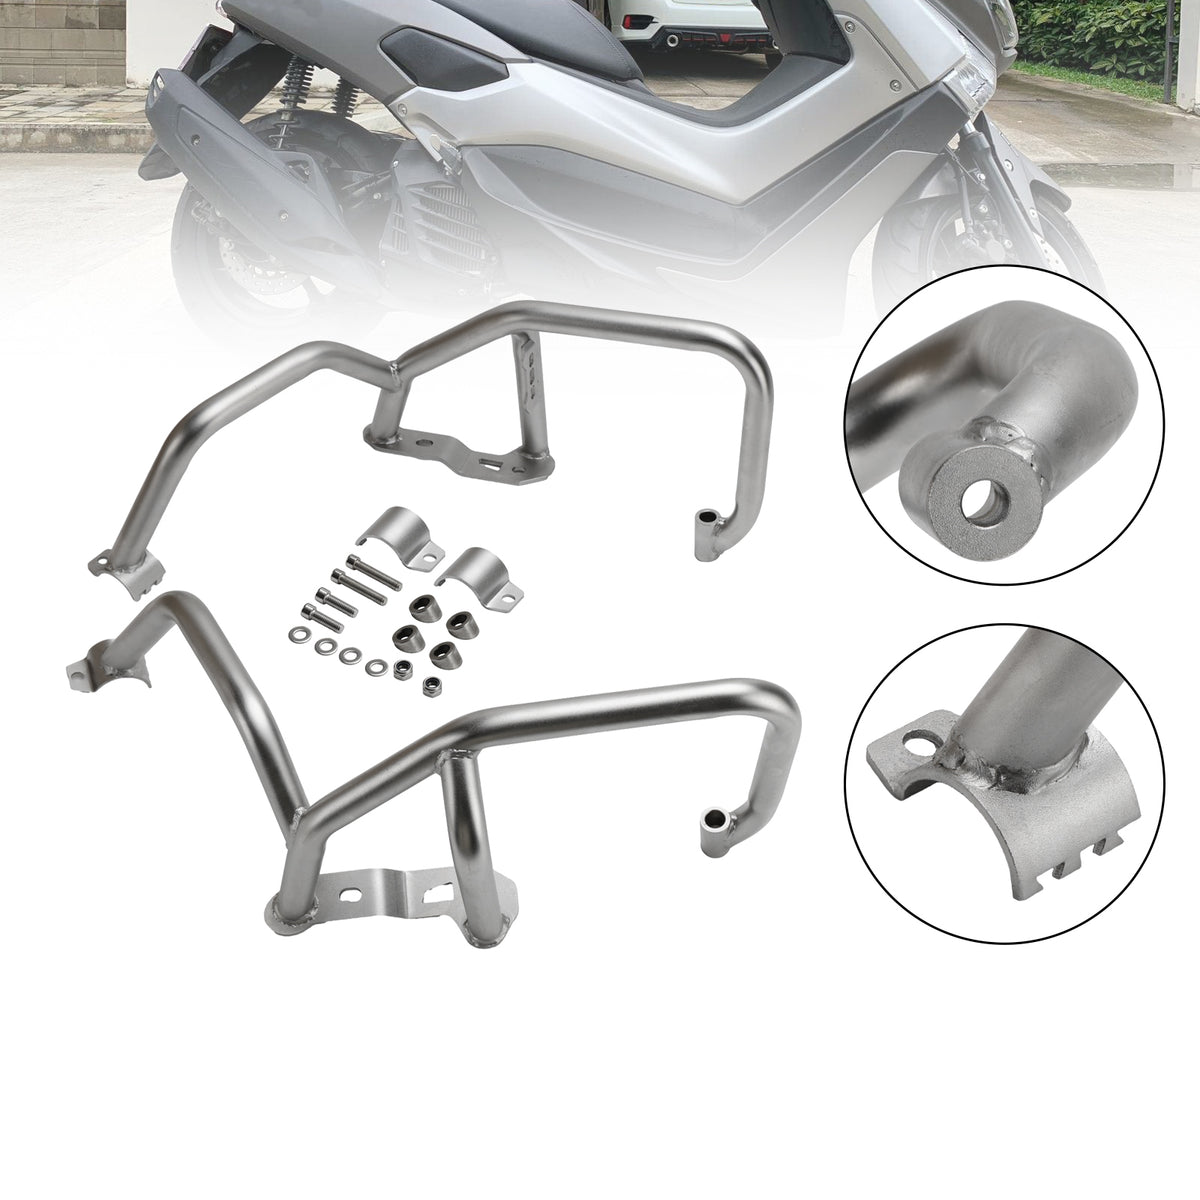 2021–2022 Honda Cb1300 Cb 1300 Motorschutzbügel, Sturzbügel, Rahmenschutz, Stoßstange